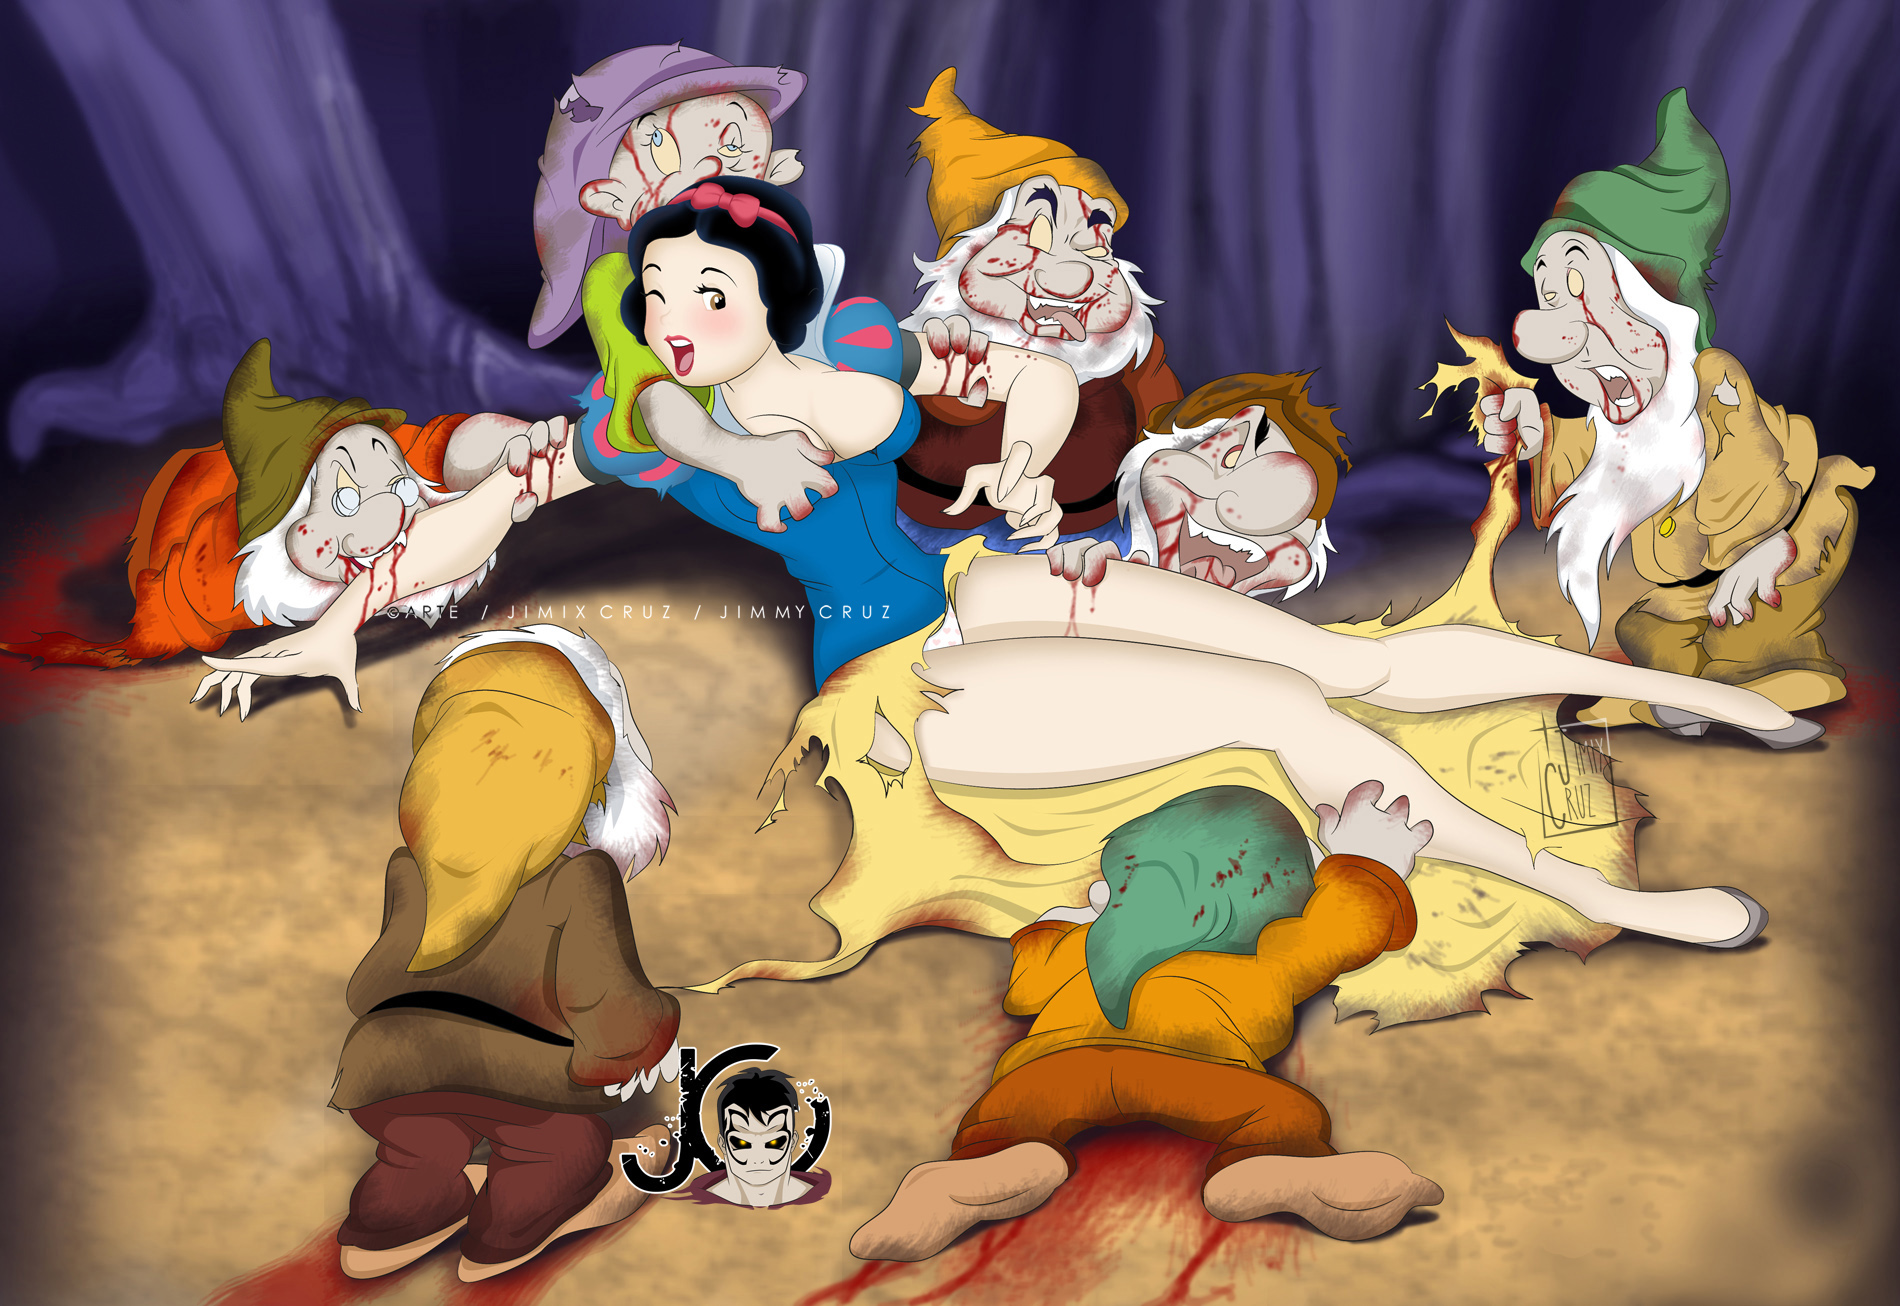 Porno snow white and the seven dwarfs. 